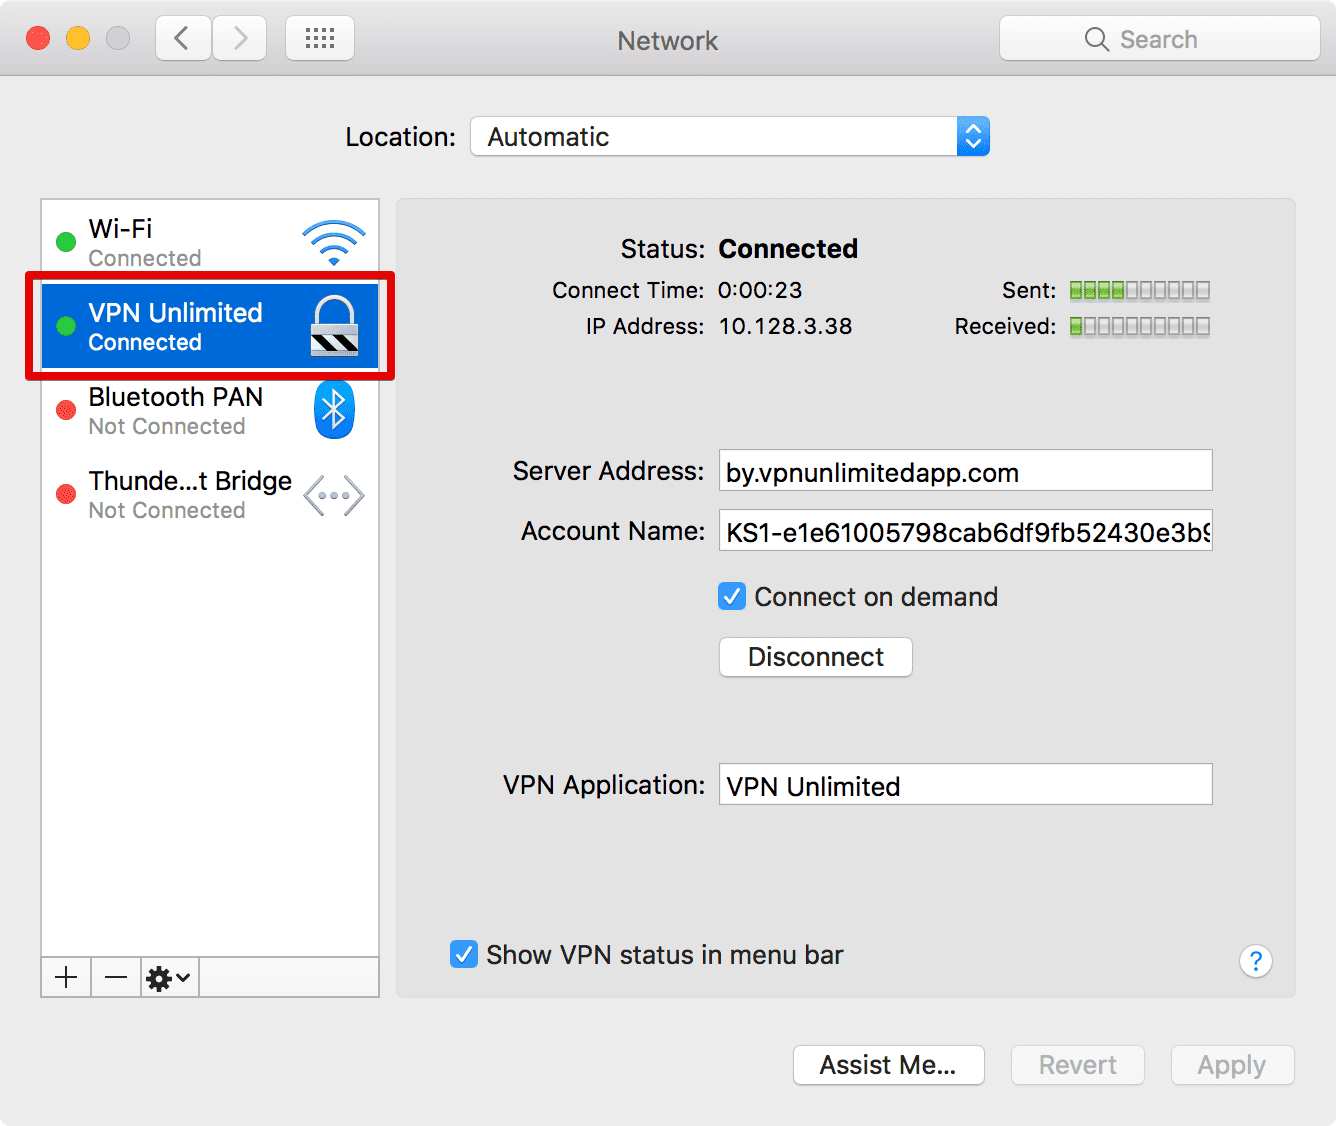 mac ssl vpn client free